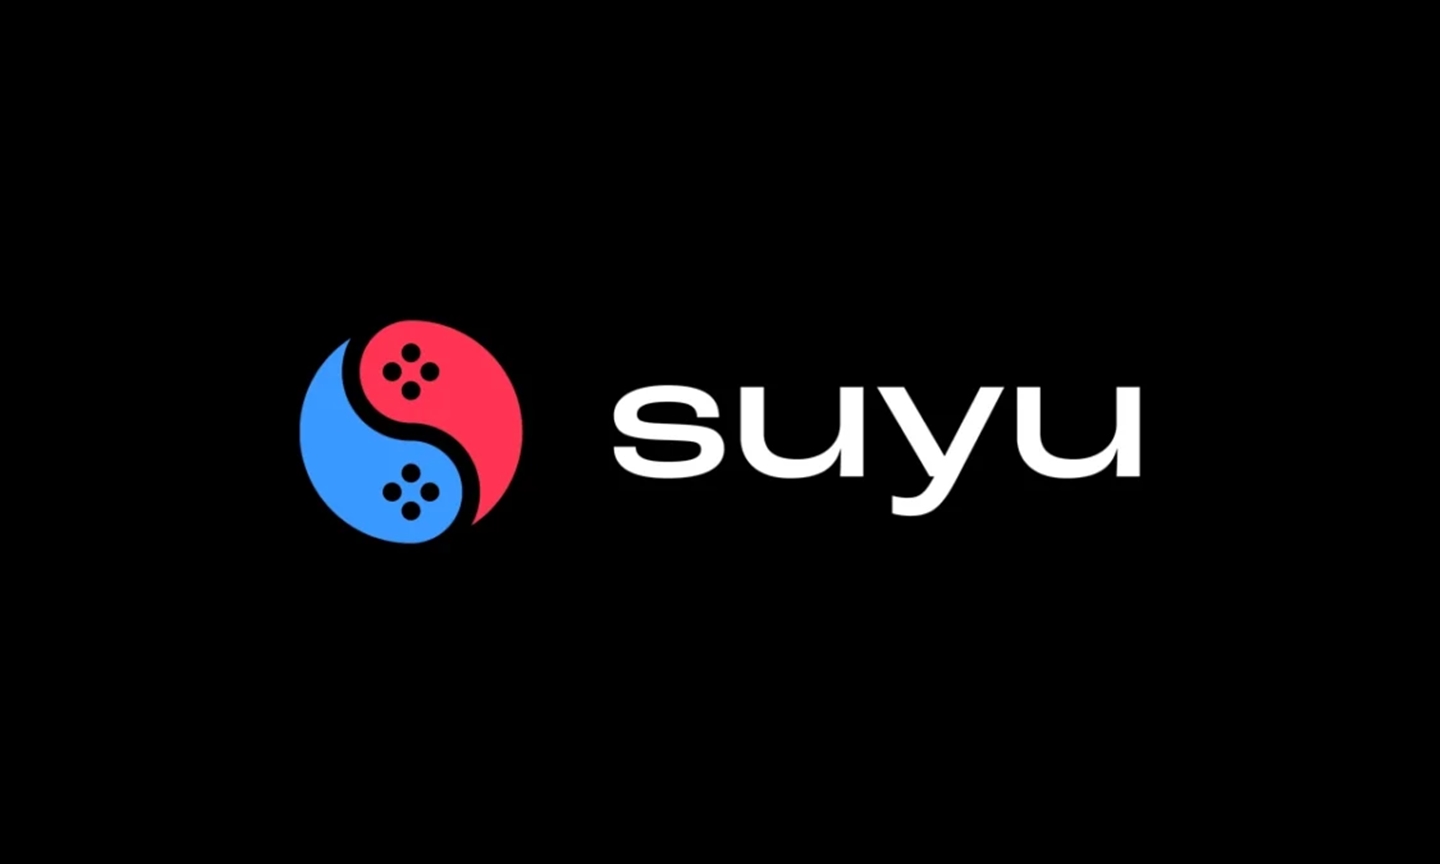 Suyu é o sucessor do Yuzu, famoso emulador de Switch que teve suas atividades encerradas pela Nintendo há duas semanas.